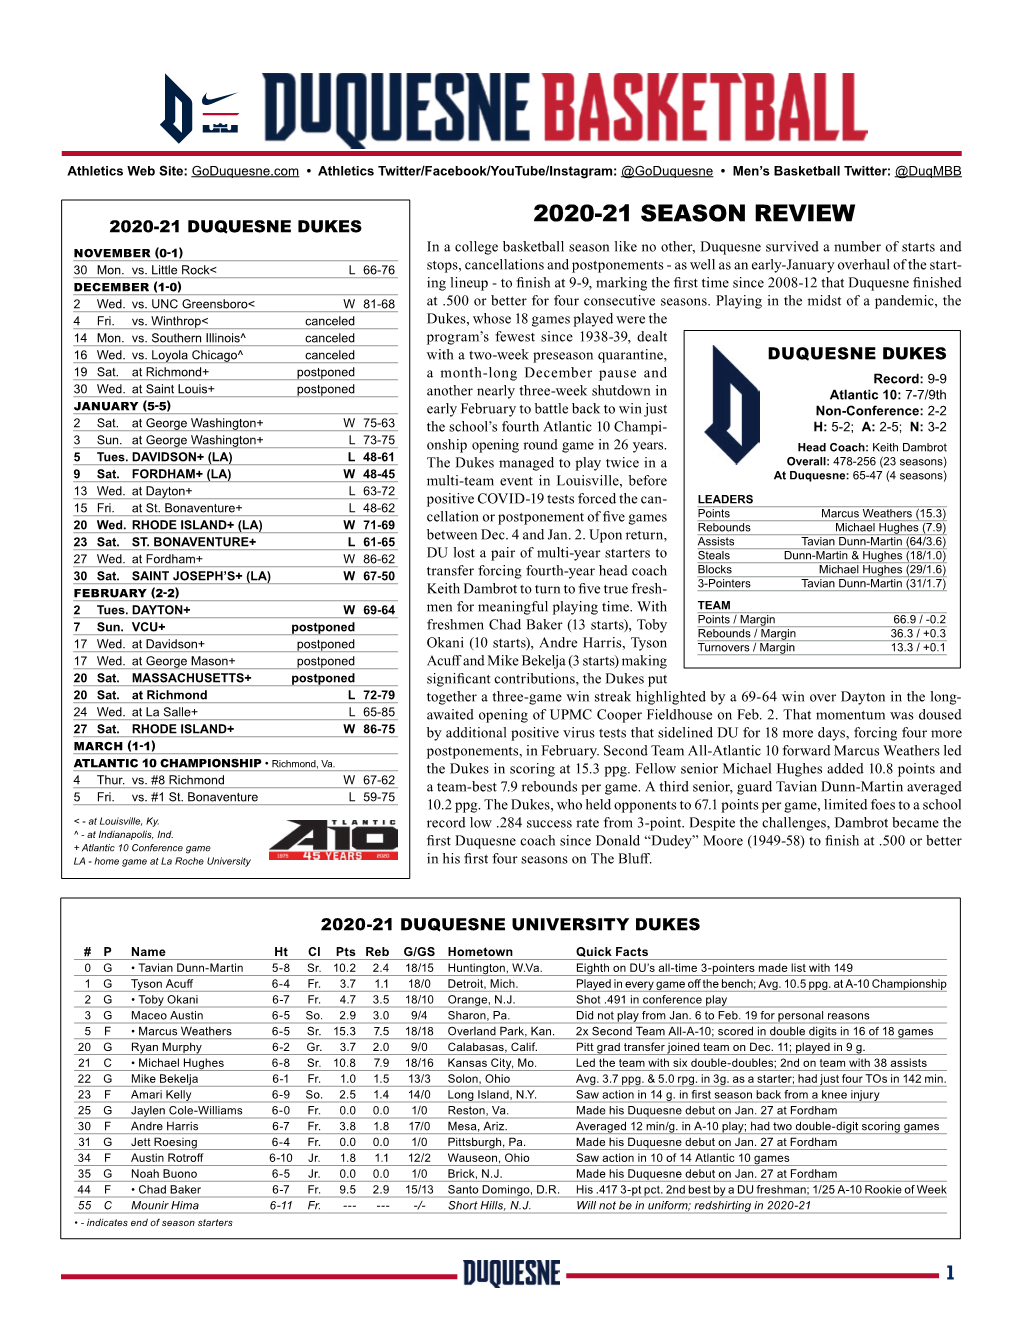 2020-21 Season Review 2020-21 Duquesne Dukes